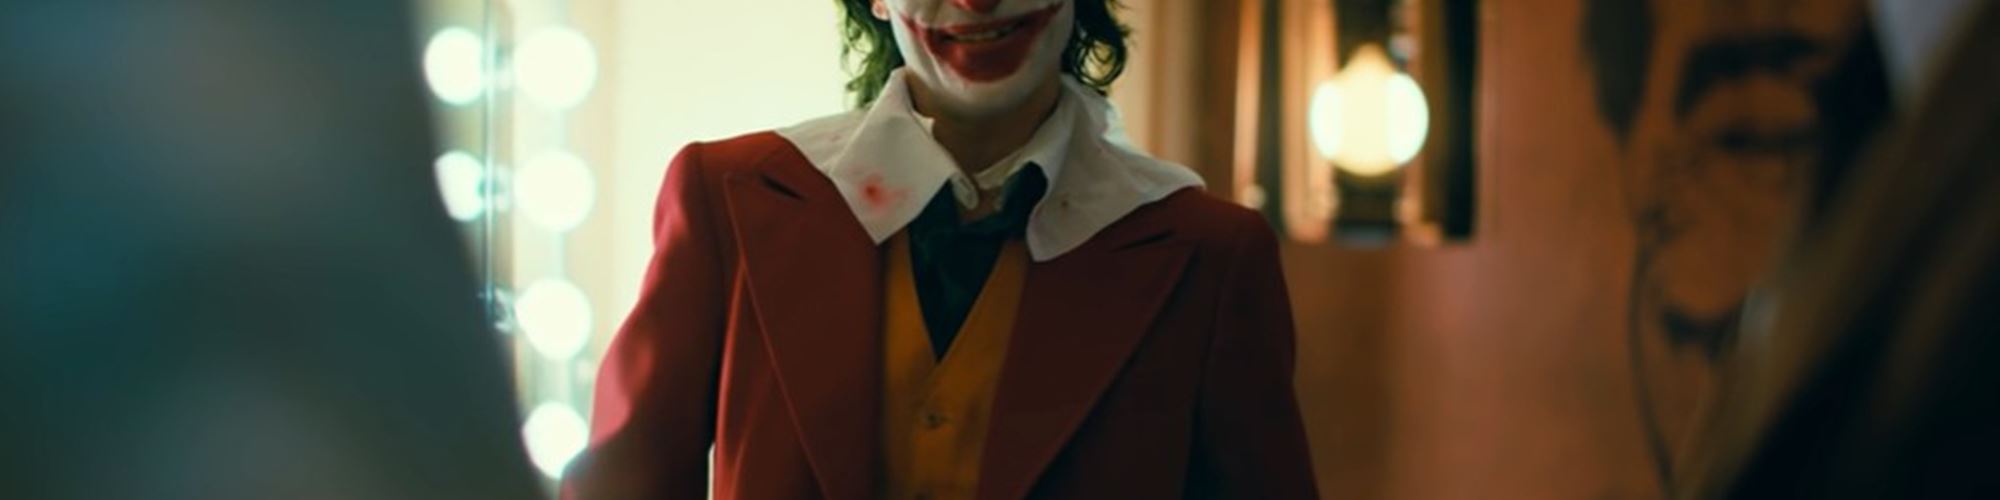 Vêm aí um novo filme de "Joker" e conta com Lady Gaga no elenco